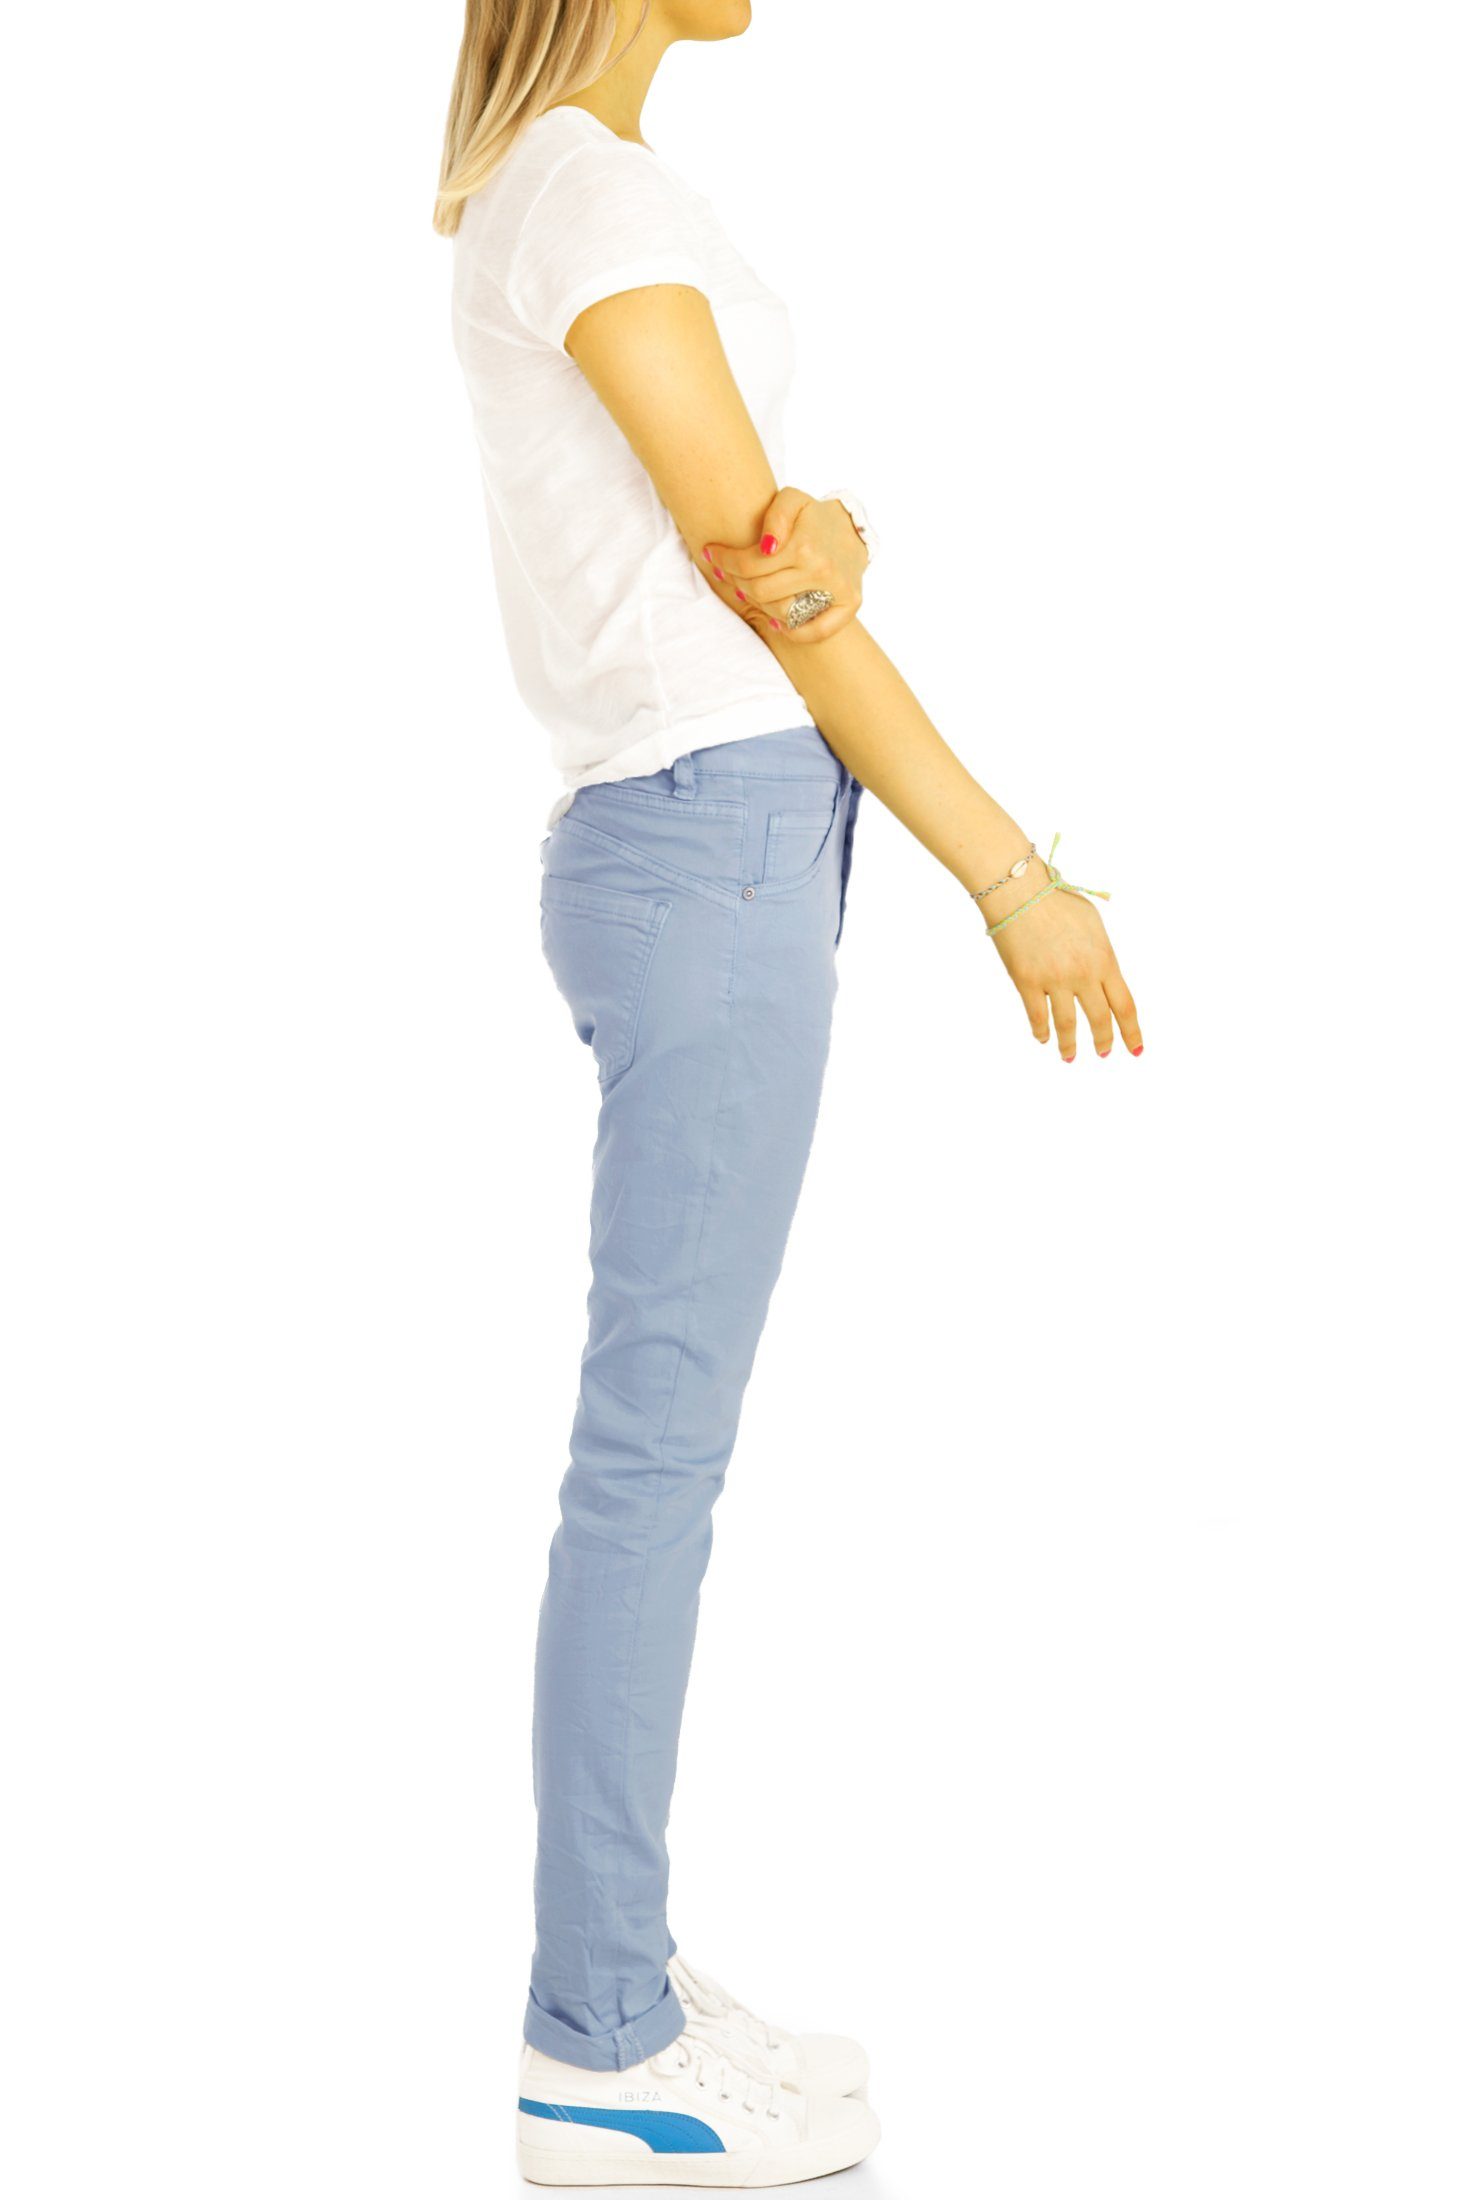 Waist be vordere Medium mit j30L-3 - Knopfleiste styled Stoffhose Damen Boyfriend Knopfleiste weiß Hose Jeans -